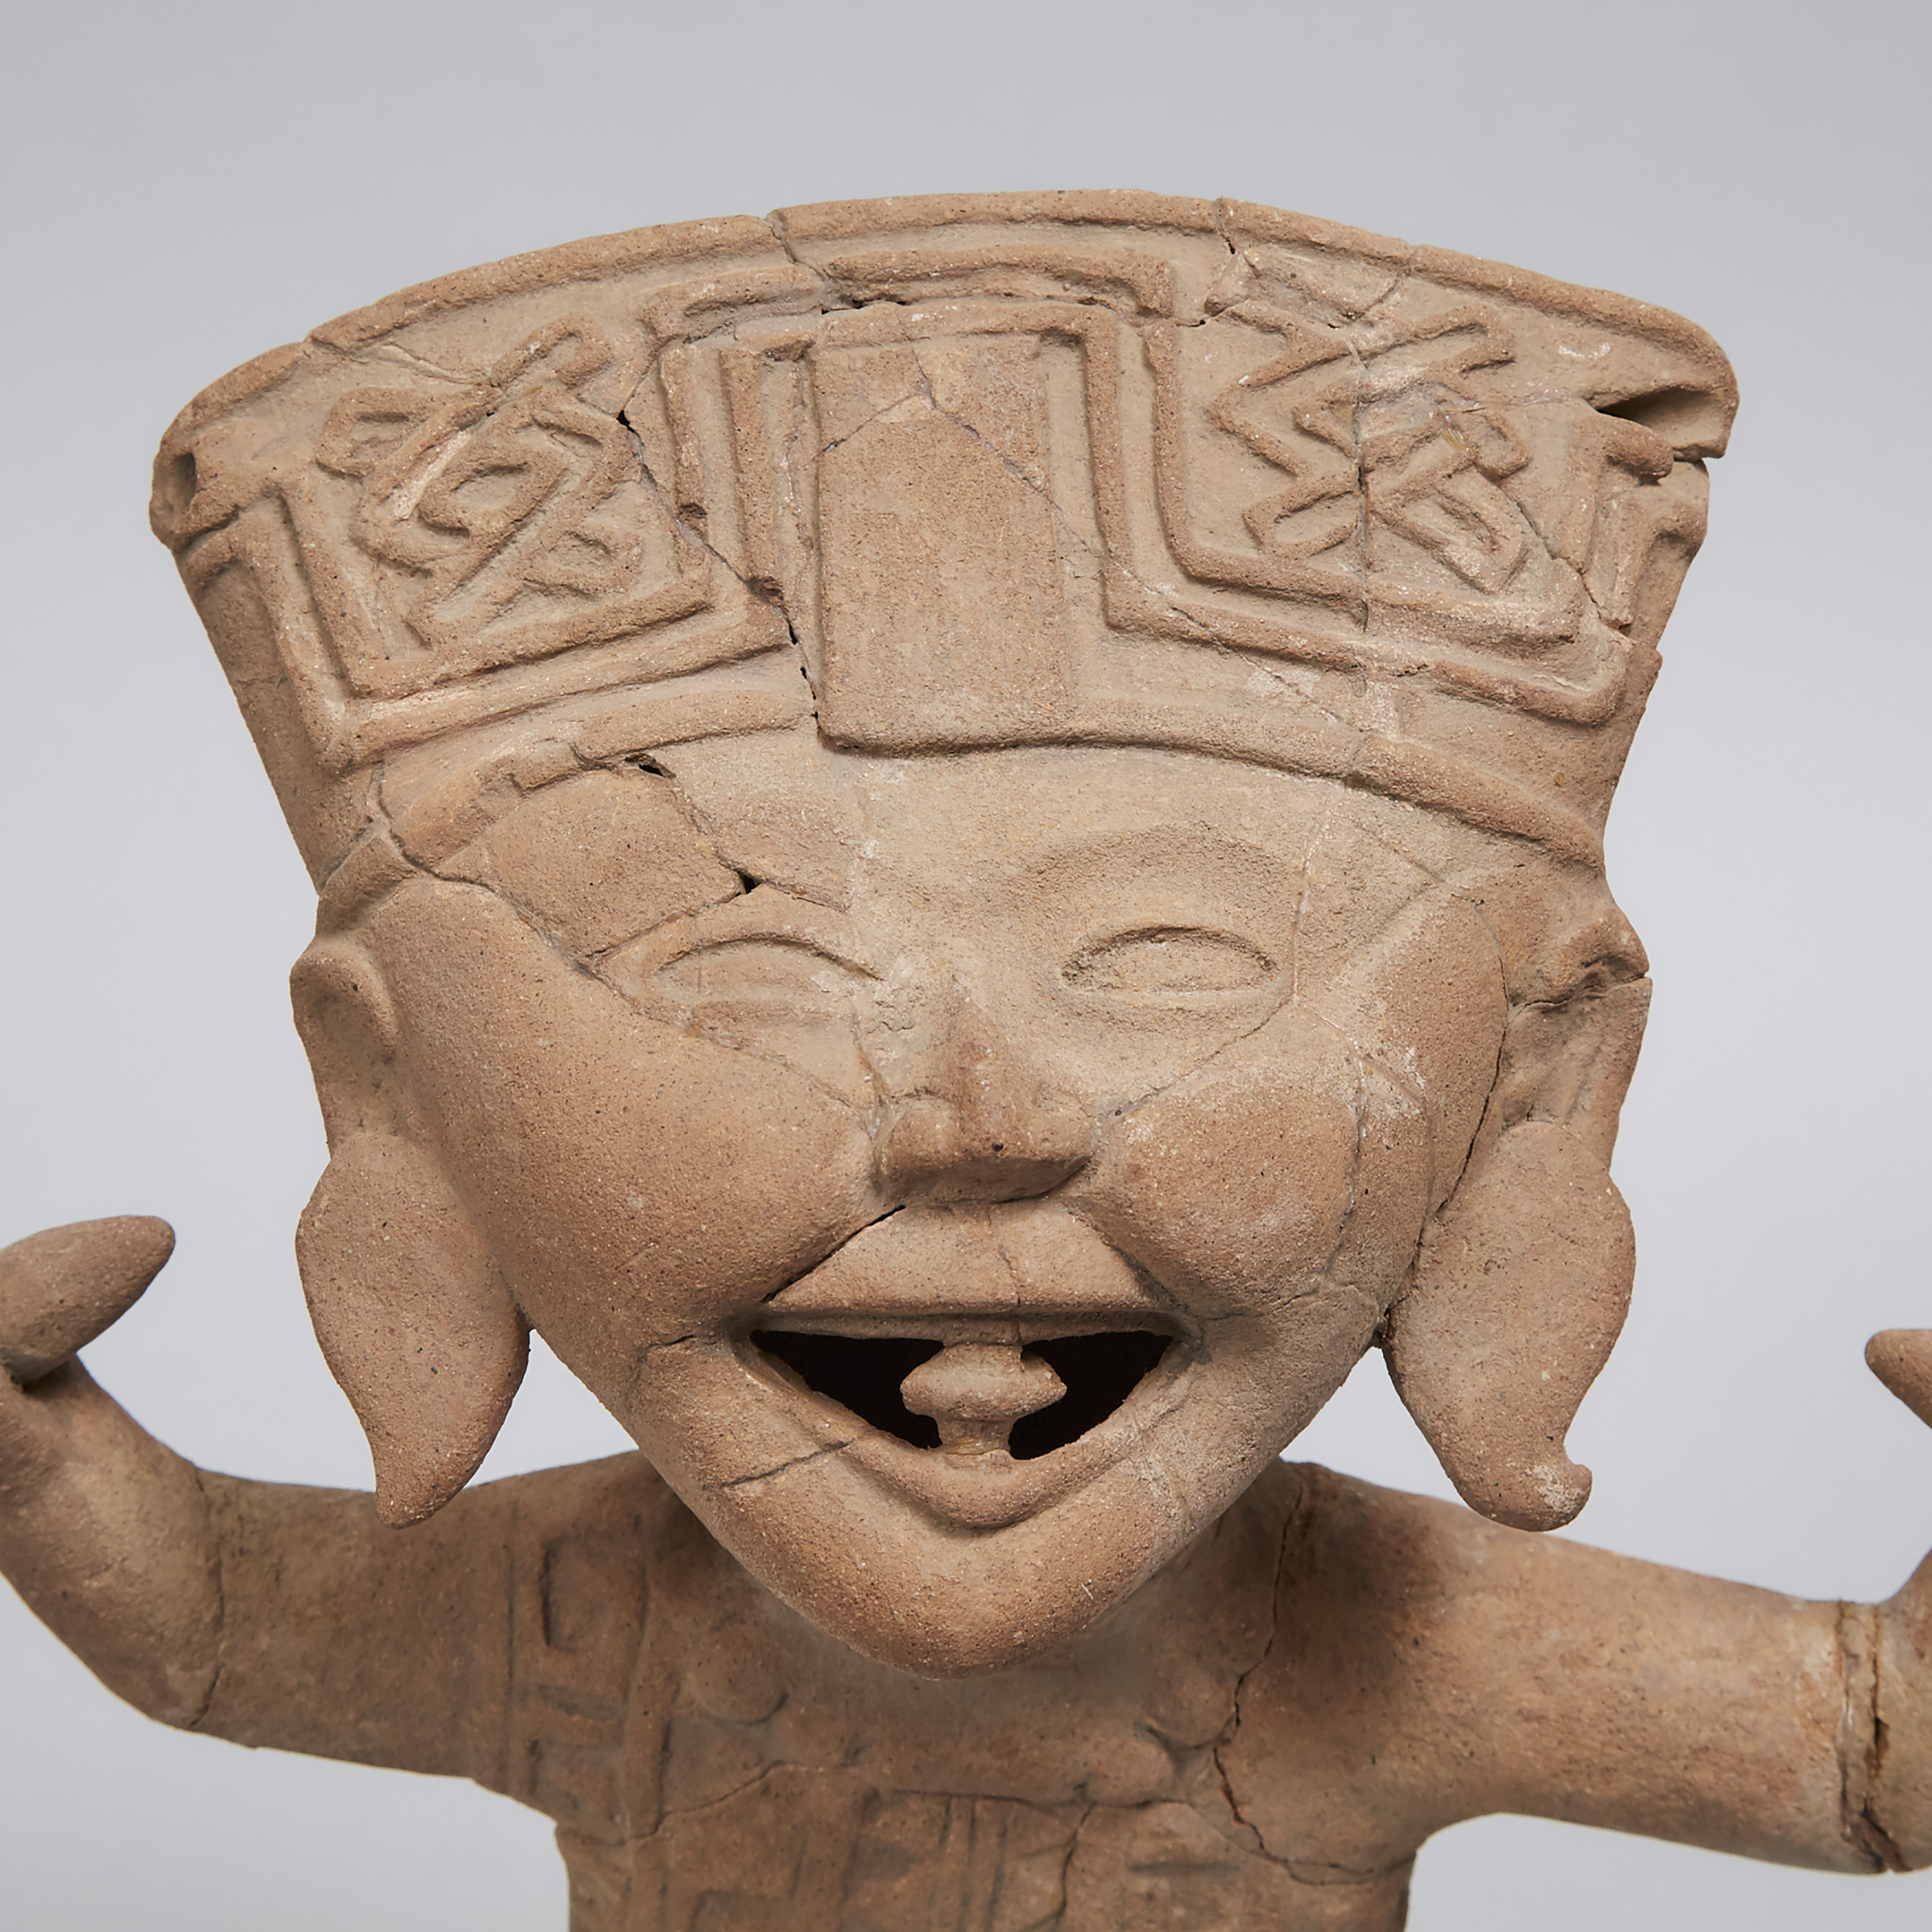 Vercruz Pottery Smiling (Sonrientes) Figure, South East Mexico, 600 - 700 A.D.